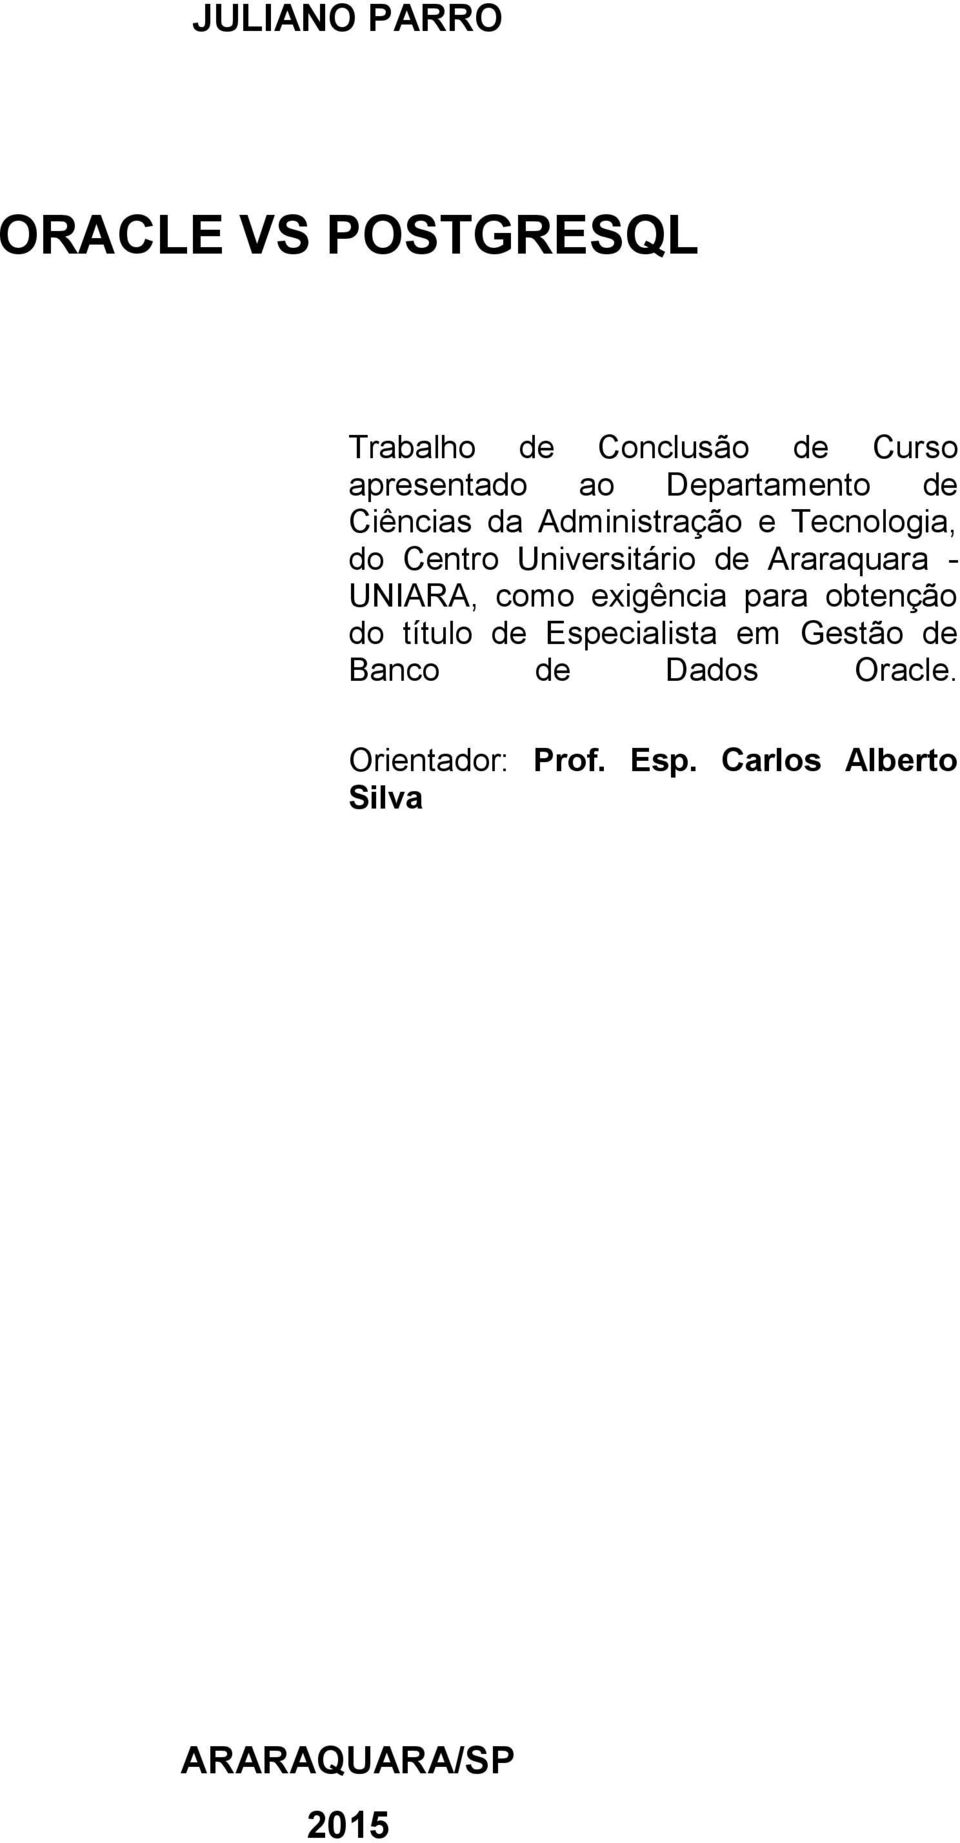 Araraquara - UNIARA, como exigência para obtenção do título de Especialista em